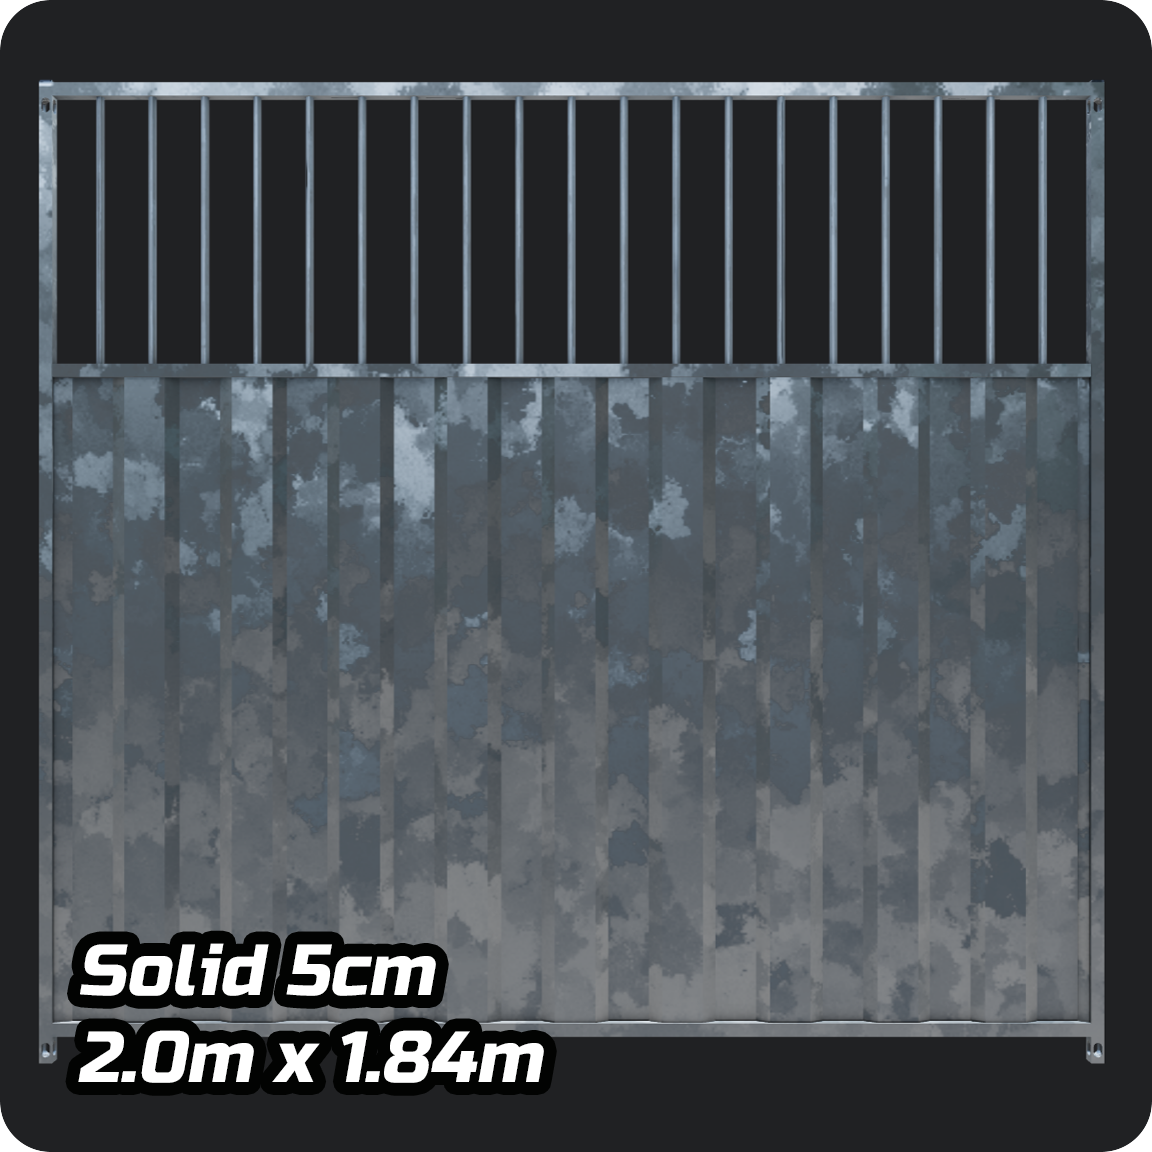 2m x 1.84m 5cm Gap 3/4 Solid Galvanised Dog Run Panel